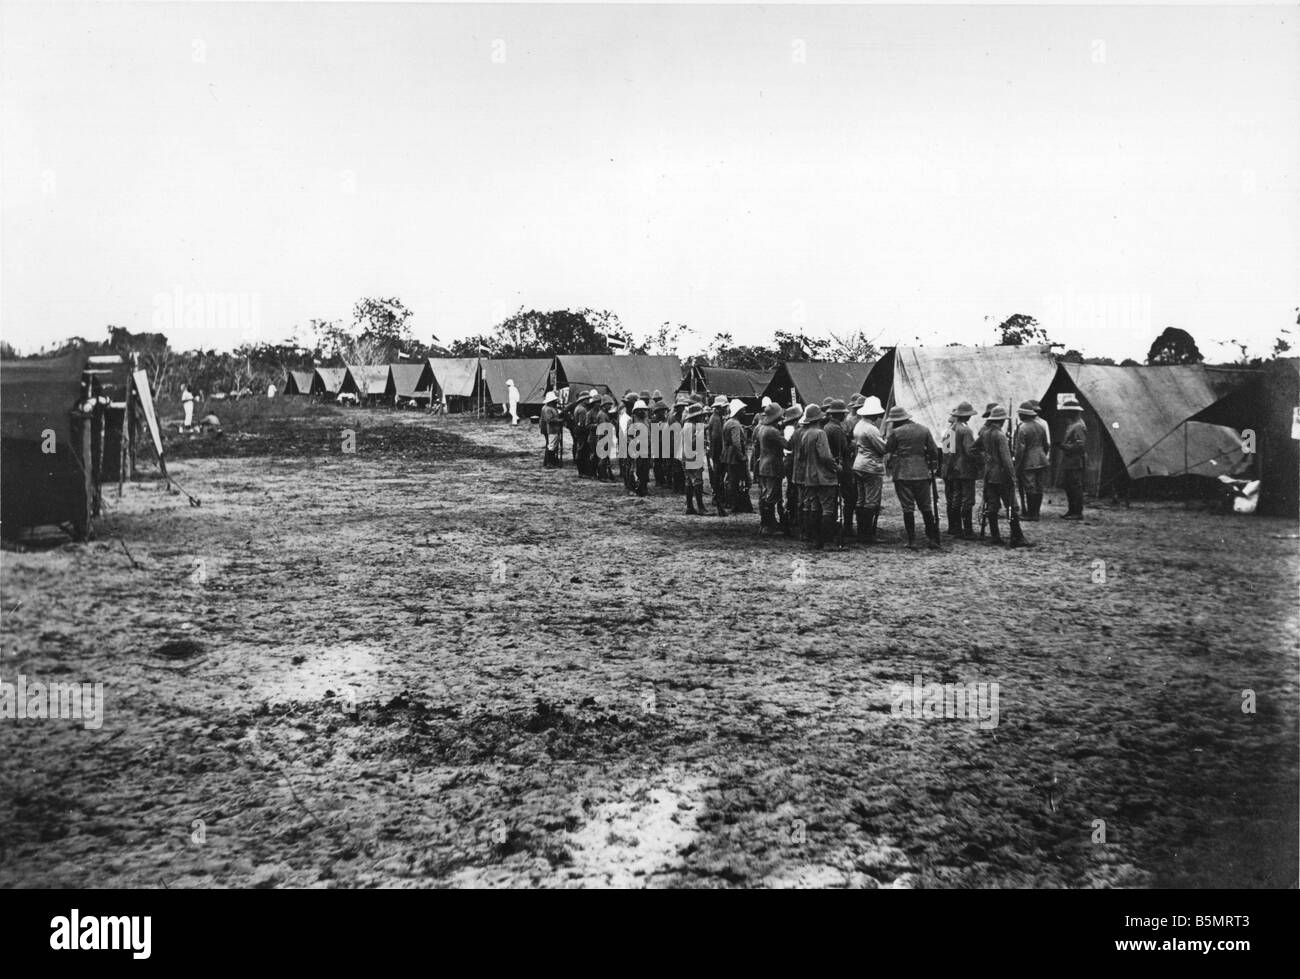 9AF 1914 A1 4 0 0 camp de l'armée coloniale, l'Afrique orientale allemande Première Guerre mondiale La guerre dans les colonies de l'Afrique de l'Est Tanzanie aujourd'hui allemand German Banque D'Images